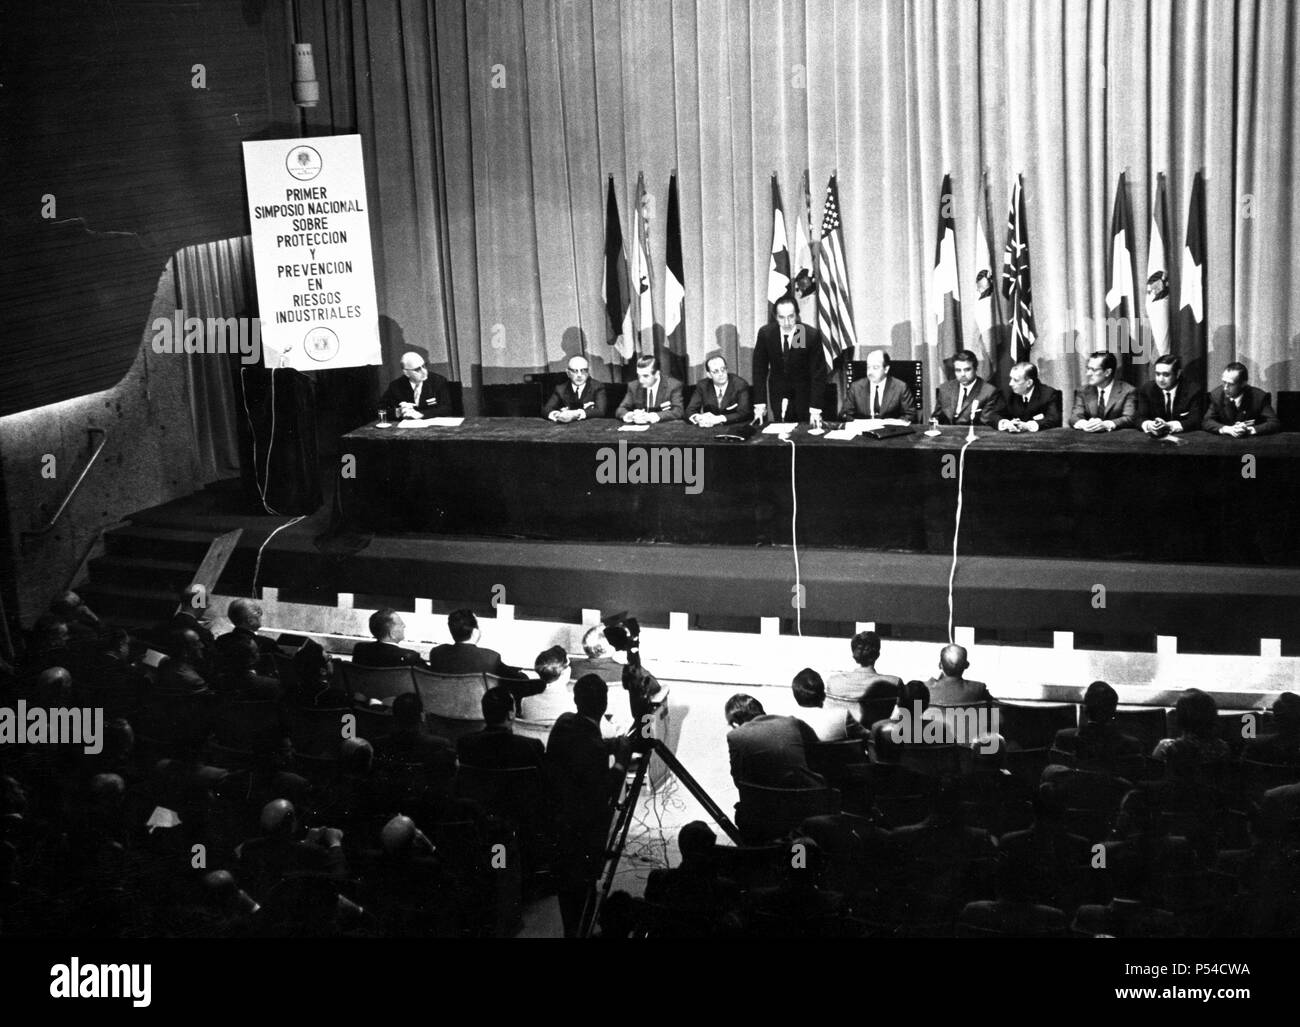 Inauguracion del salón del file INI del Simposio nacional de Protección de Riesgos industriales. Madrid, 1957. Foto Stock